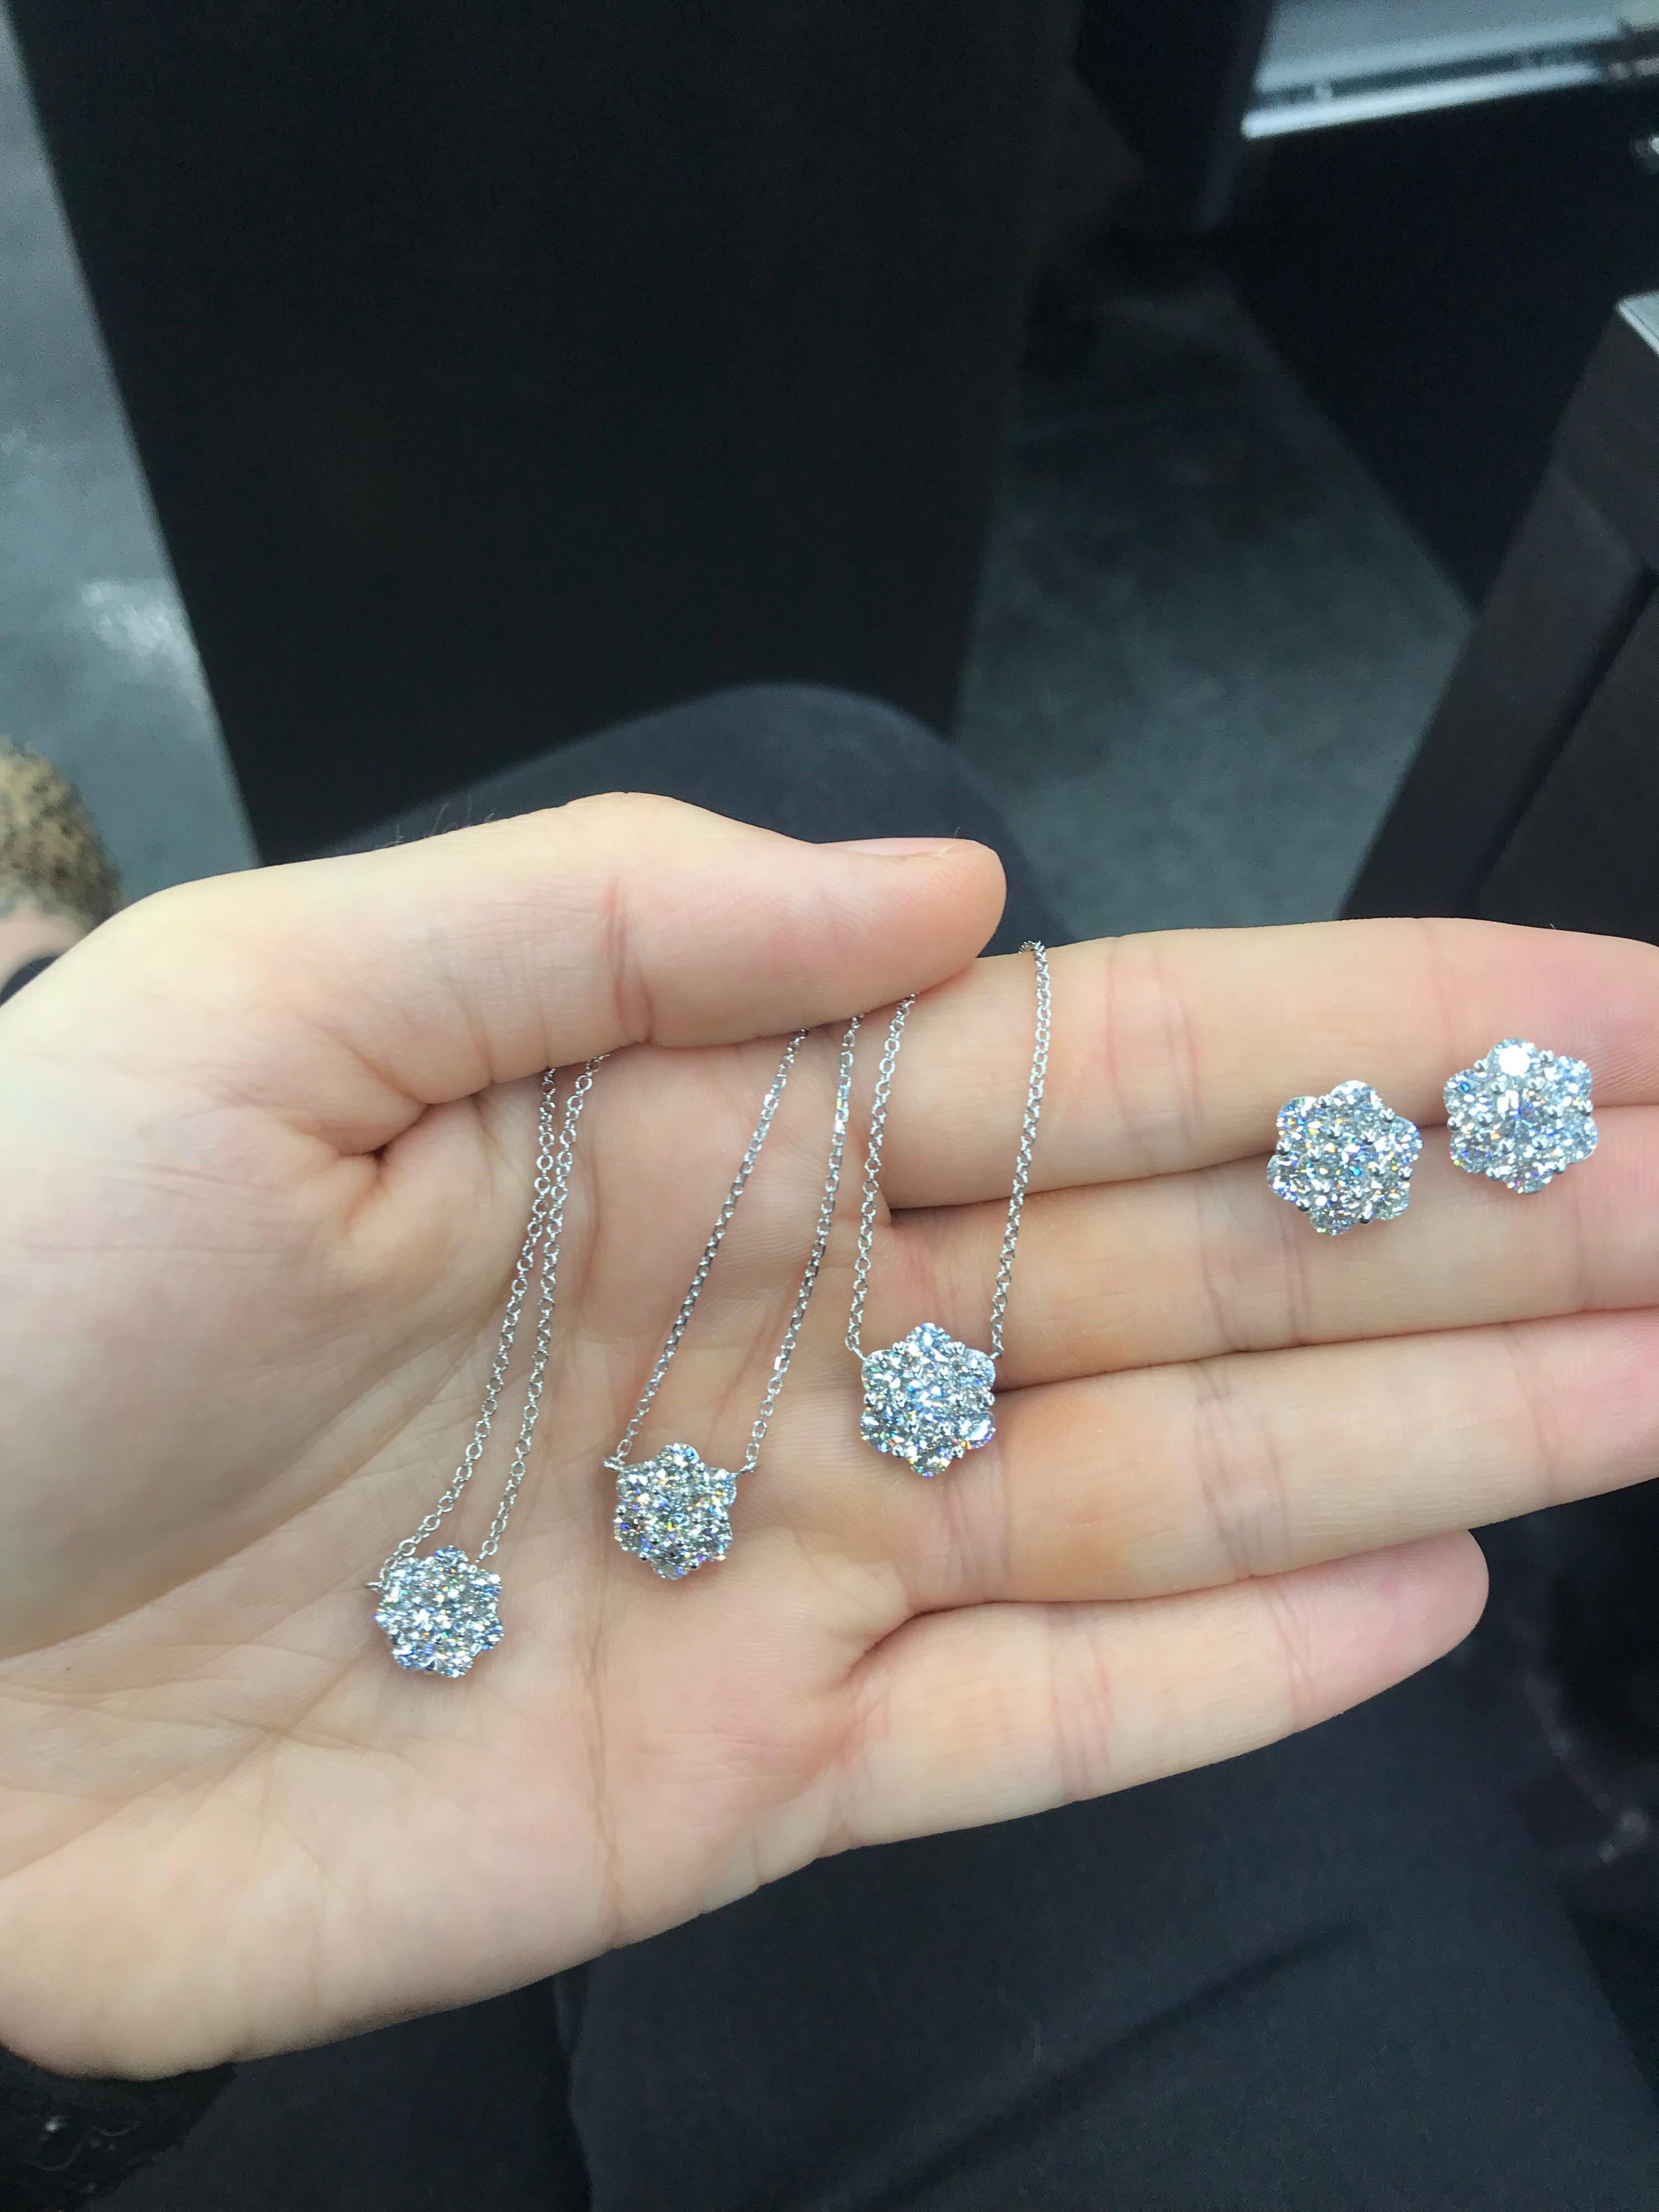 Women's Diamond Cluster Floral Pendant Necklace 0.79 Carat 18 Karat White Gold